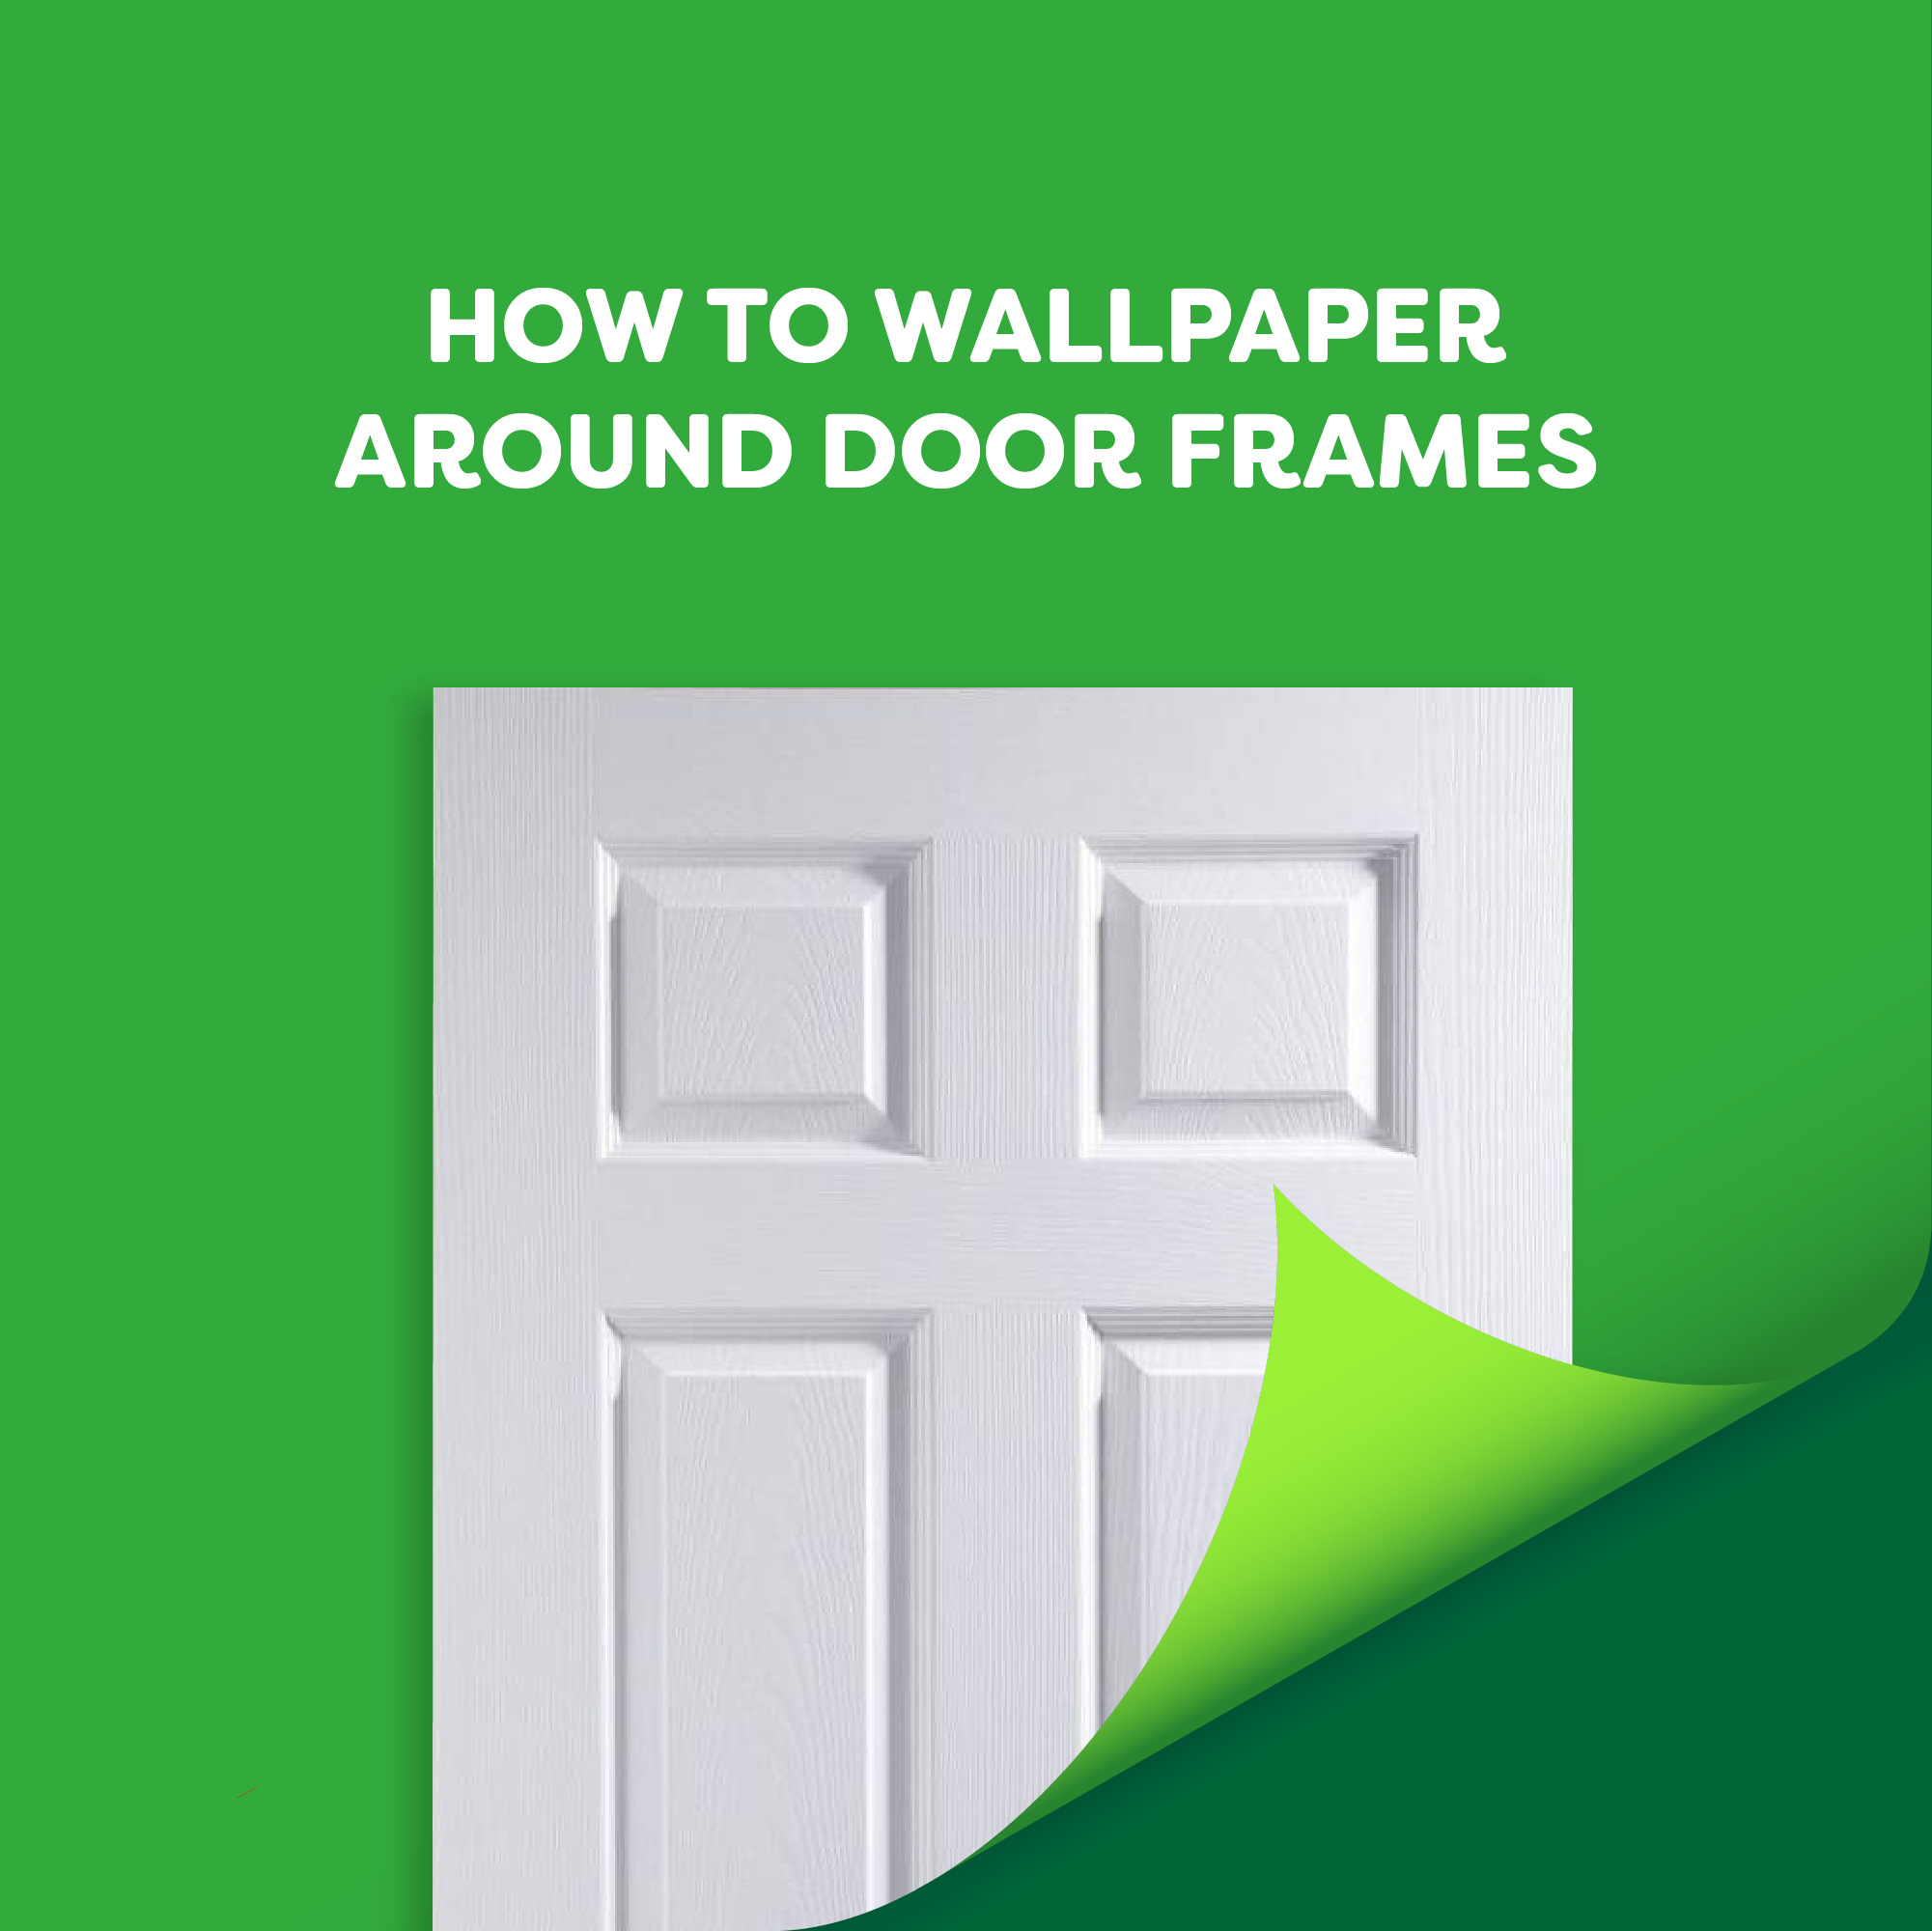 How to Wallpaper Around Door Frames